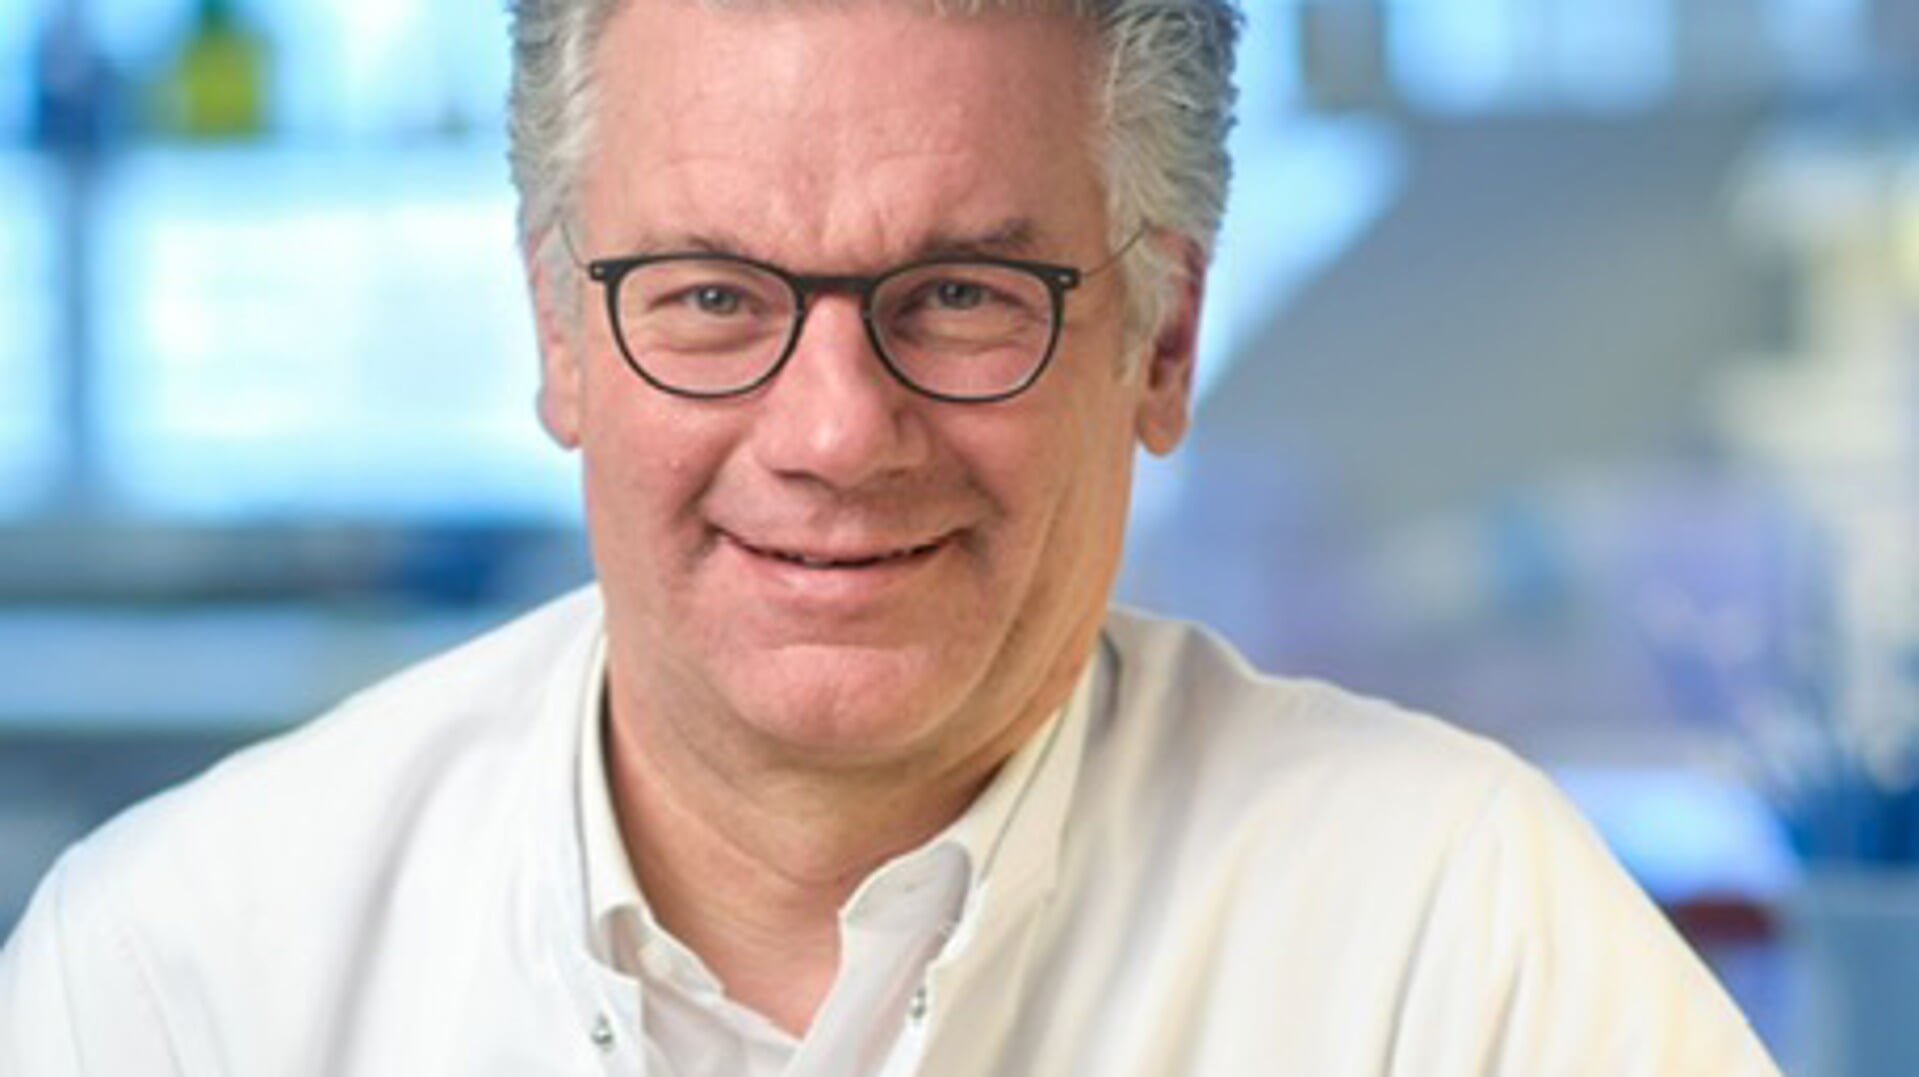 Hoofdgast is internist prof. dr. Christian Blank van het Antoni van Leeuwenhoek Ziekenhuis in Amsterdam